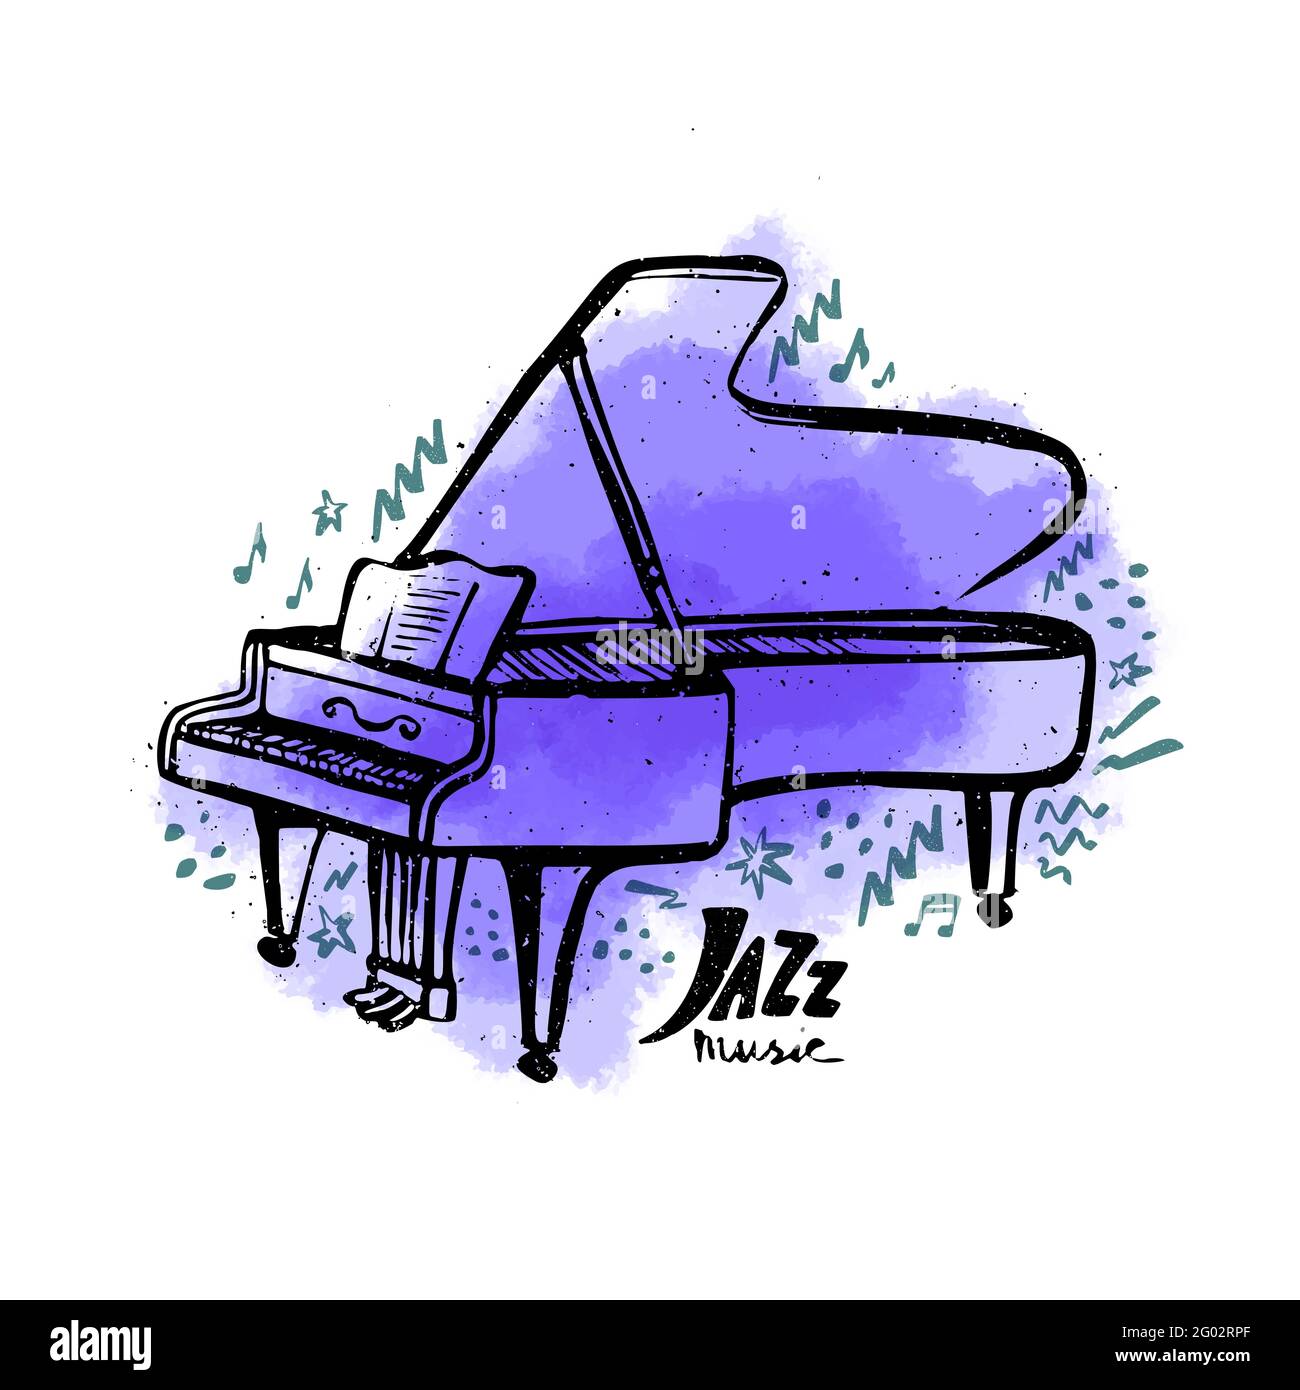 Piano dessiné à la main. Concept de musique jazz. Illustration vectorielle  de style encre avec une coloration d'aquarelle violette sur fond blanc  Image Vectorielle Stock - Alamy